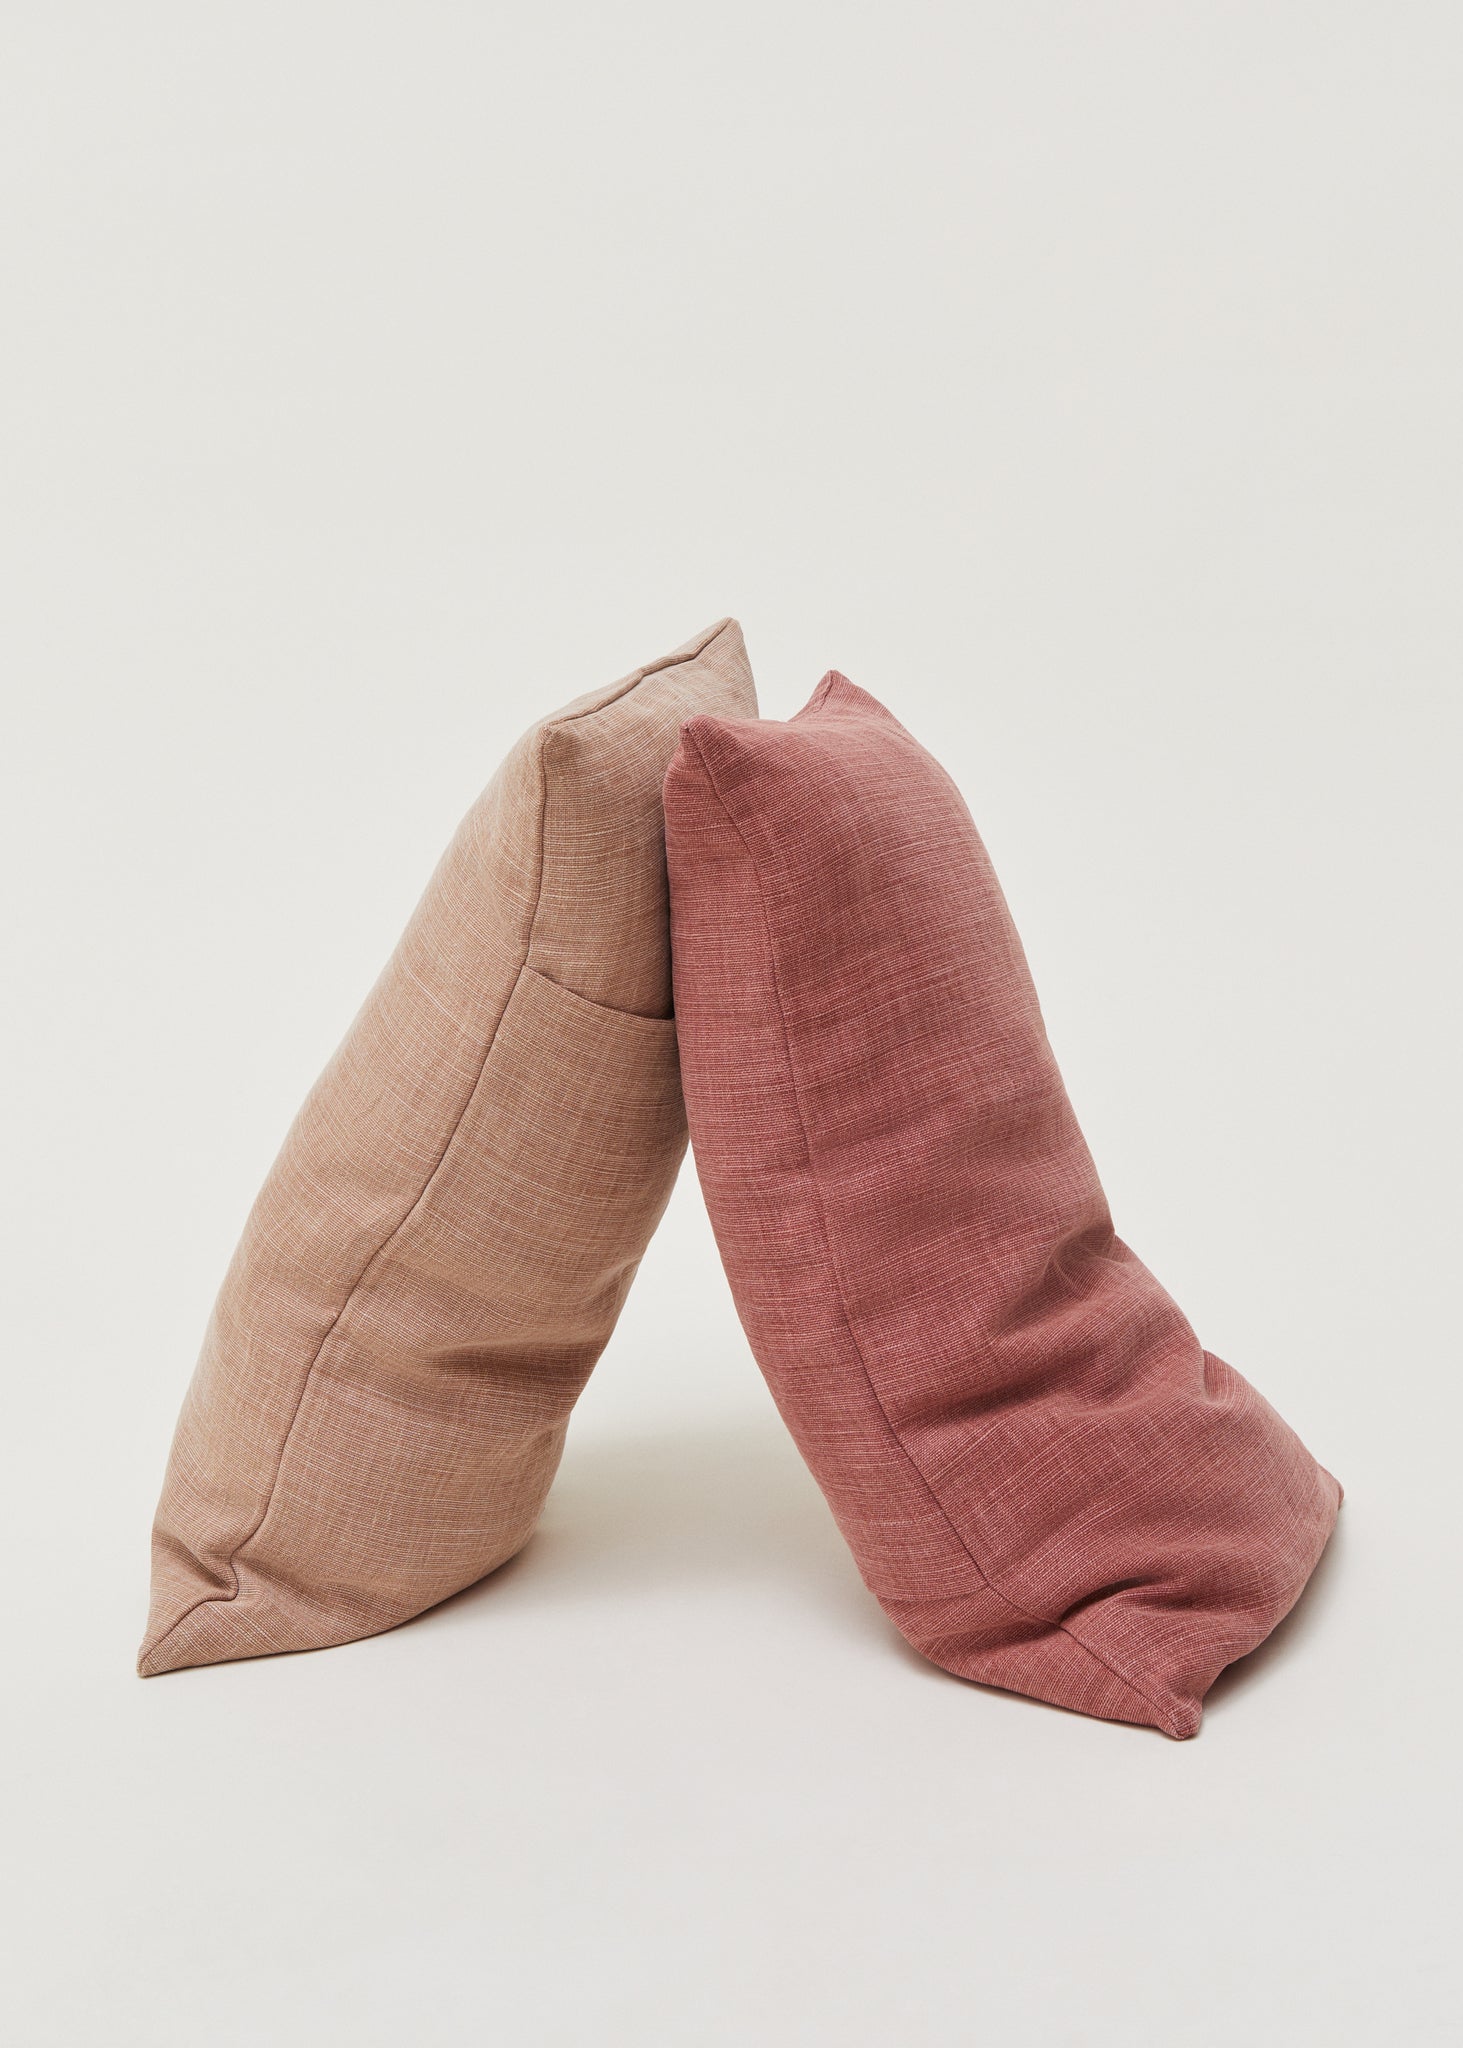 Aiayu Linen Pillow (40x60) / Terracotta